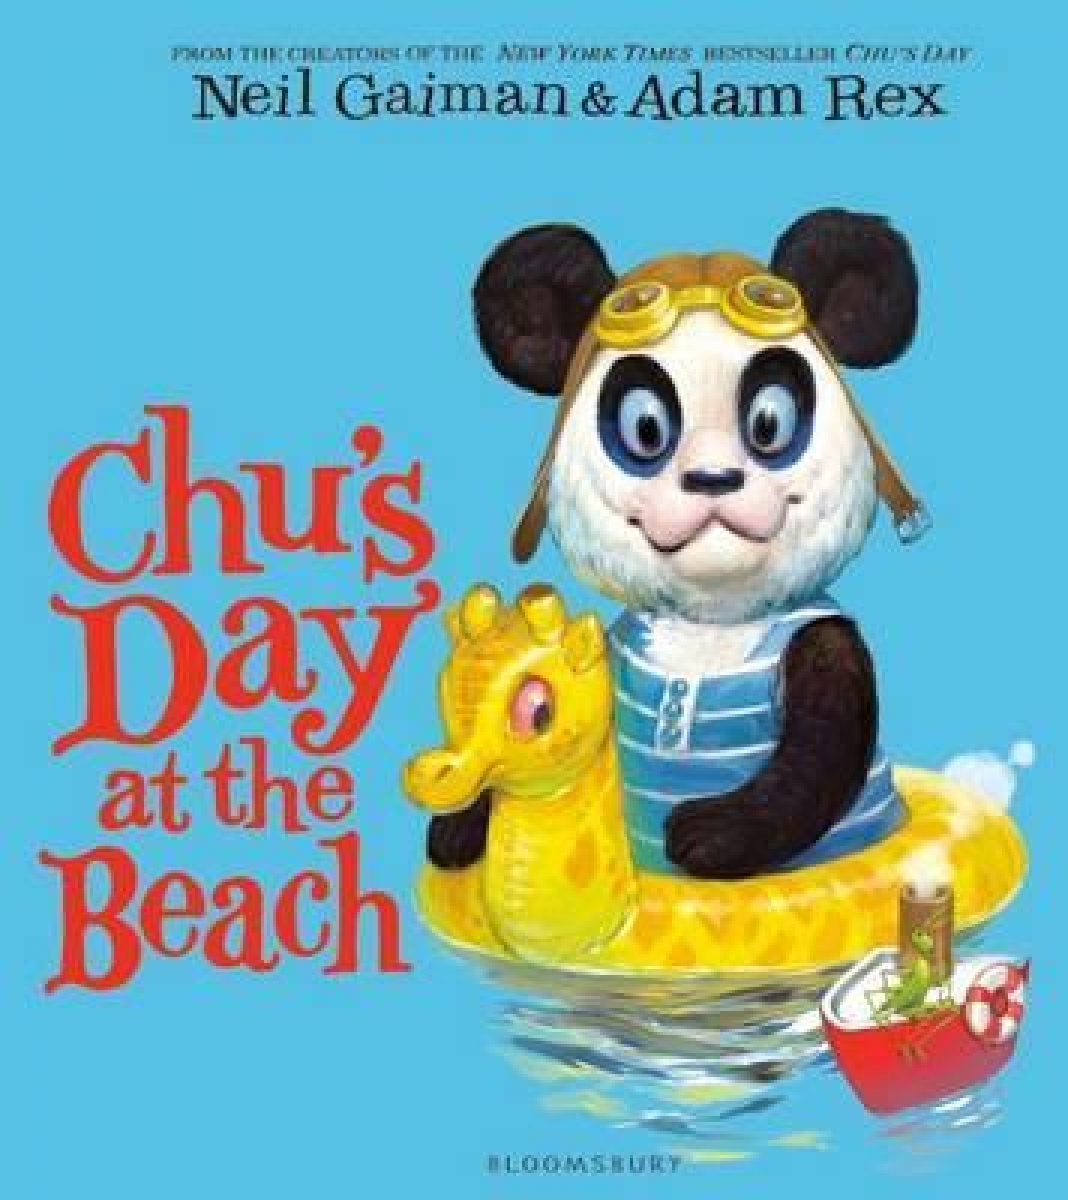 Gaiman, Neil Chu's Day at the Beach 